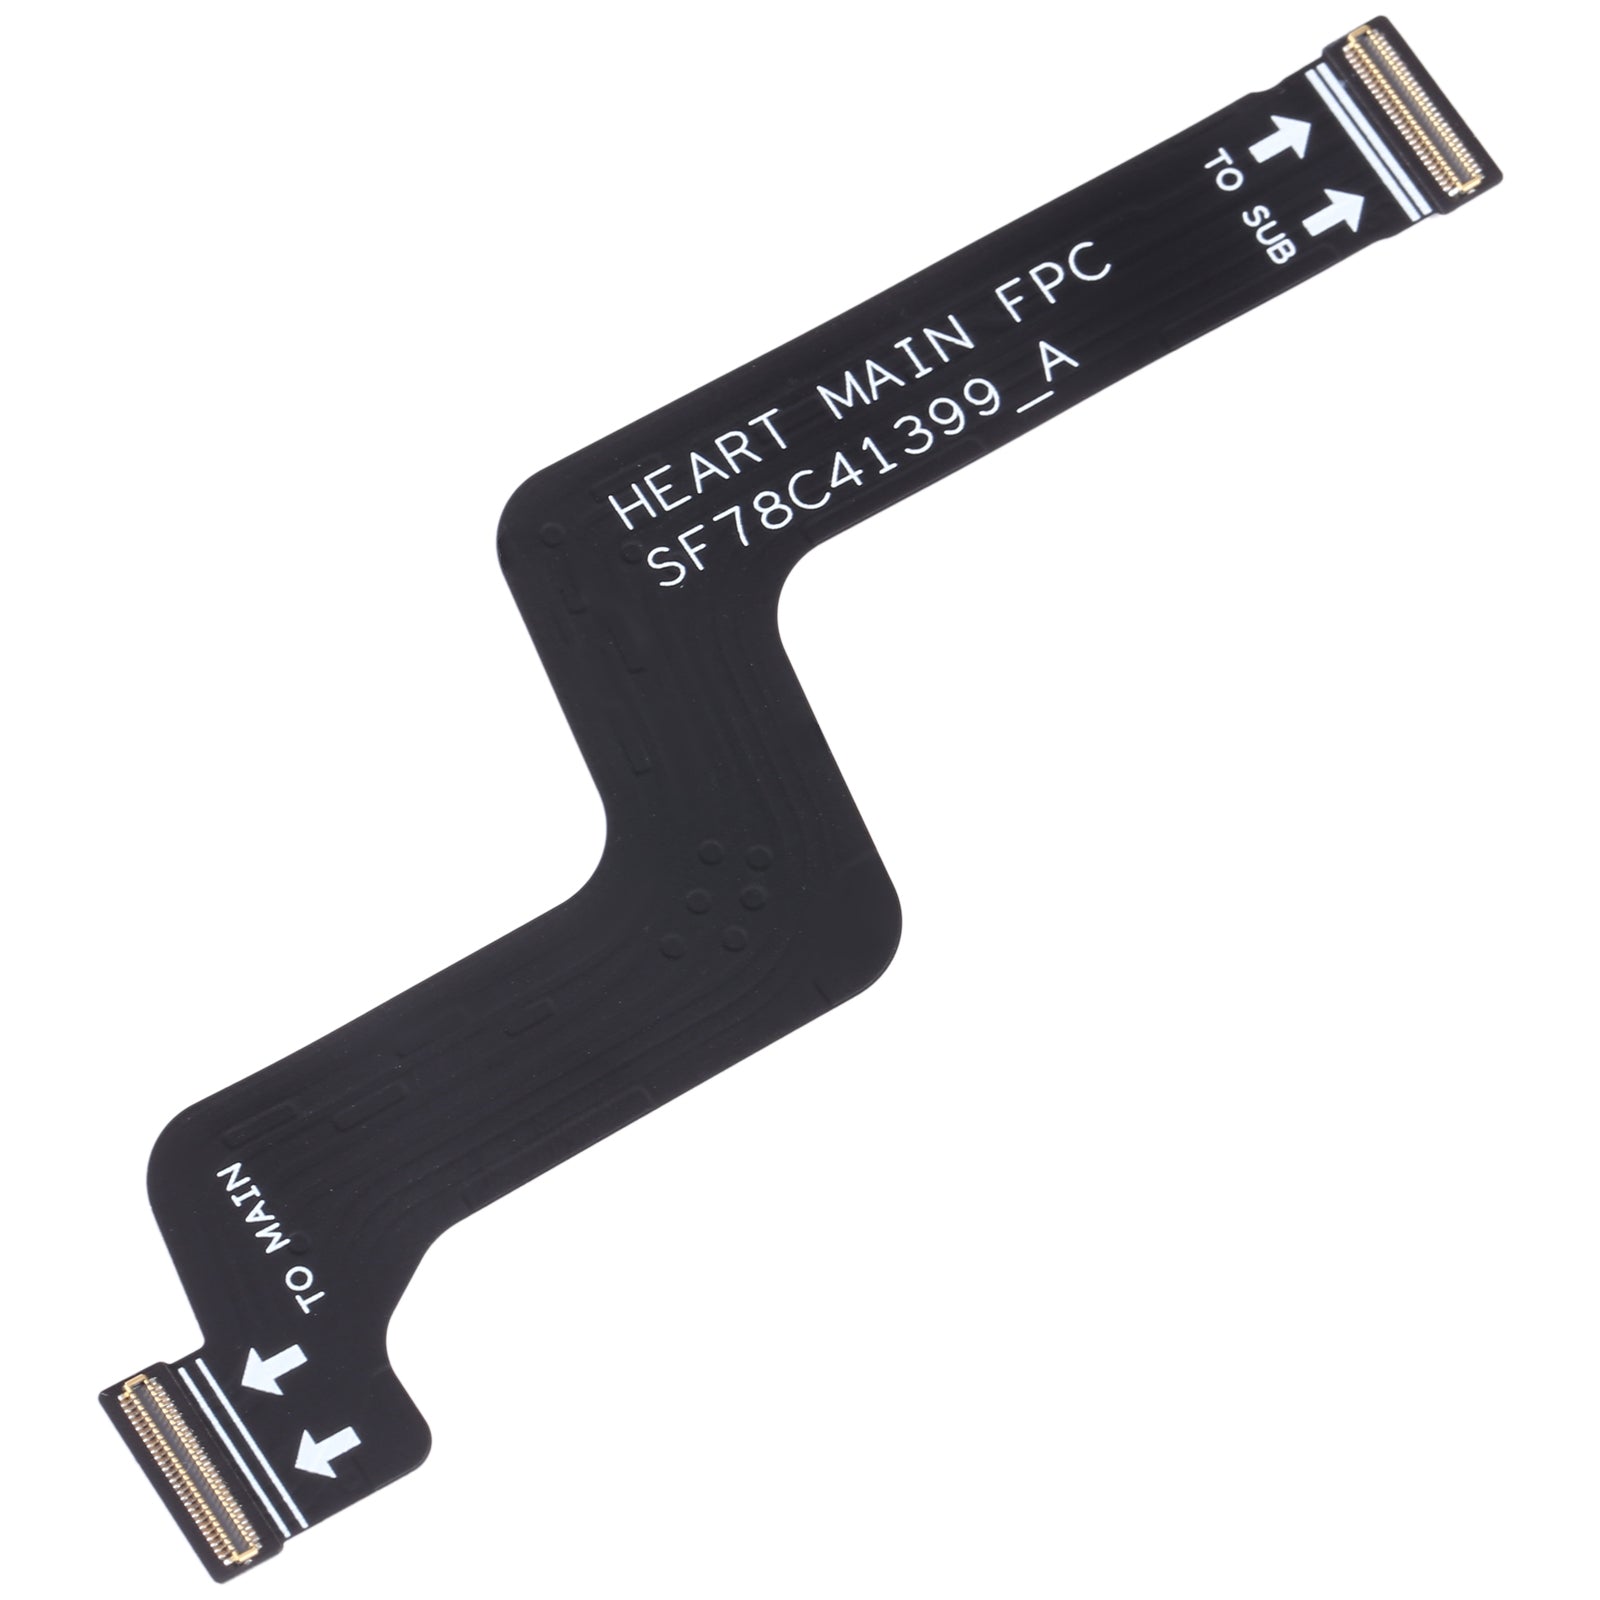 Lenovo Z5 Pro GT L78032 Board Connector Flex Cable